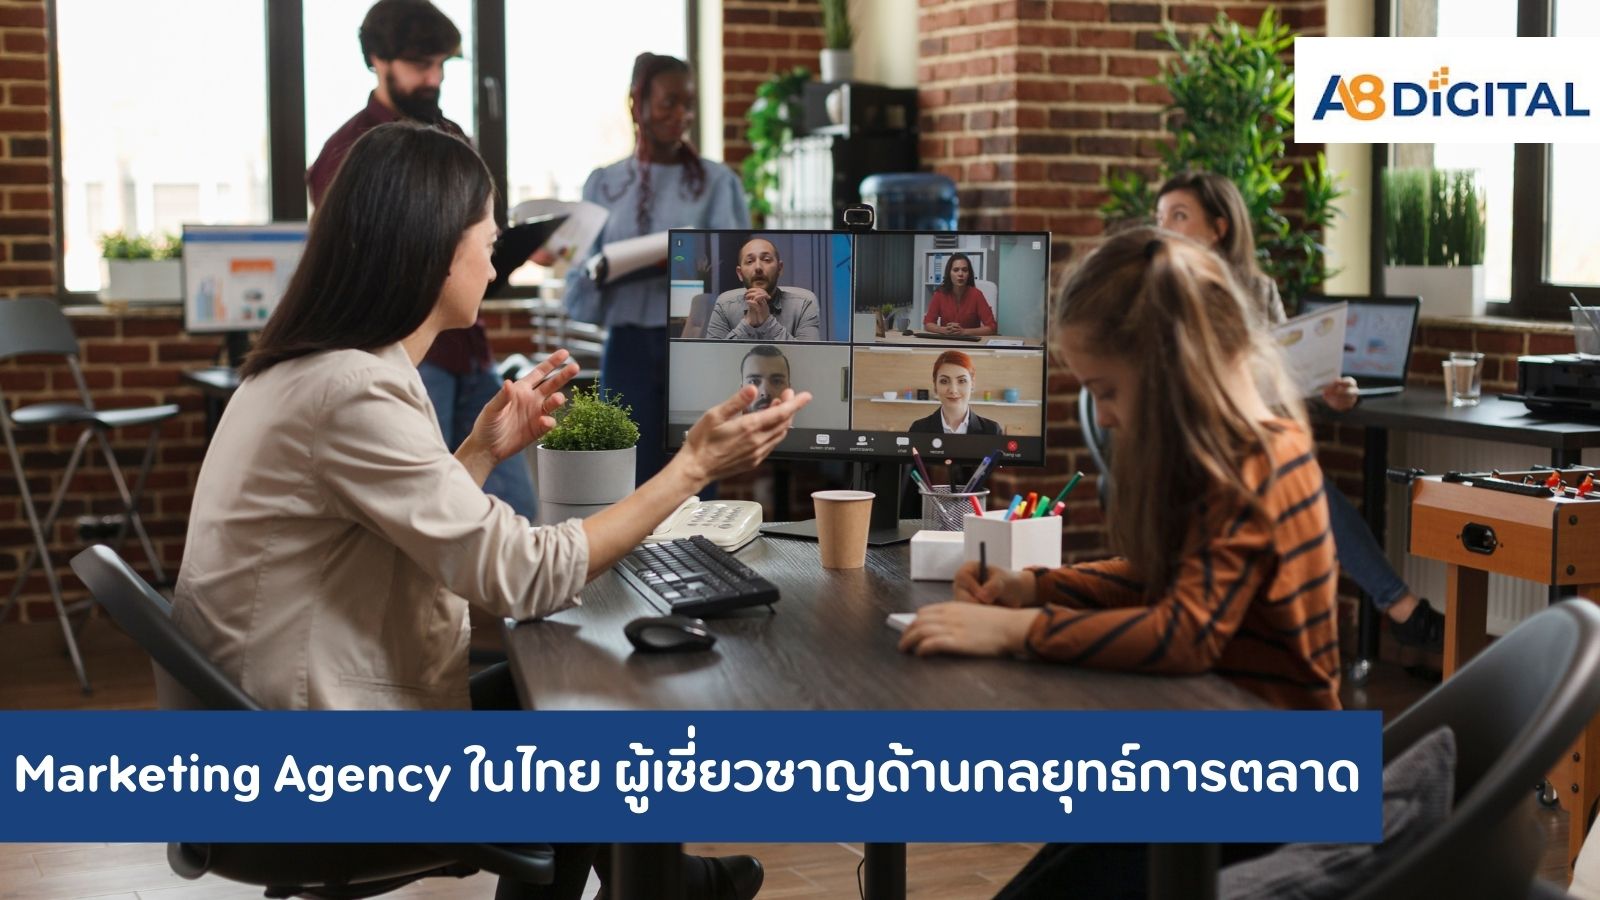 Marketing Agency ในไทย ผู้เชี่ยวชาญด้านกลยุทธ์การตลาดที่ขับเคลื่อนธุรกิจของคุณ